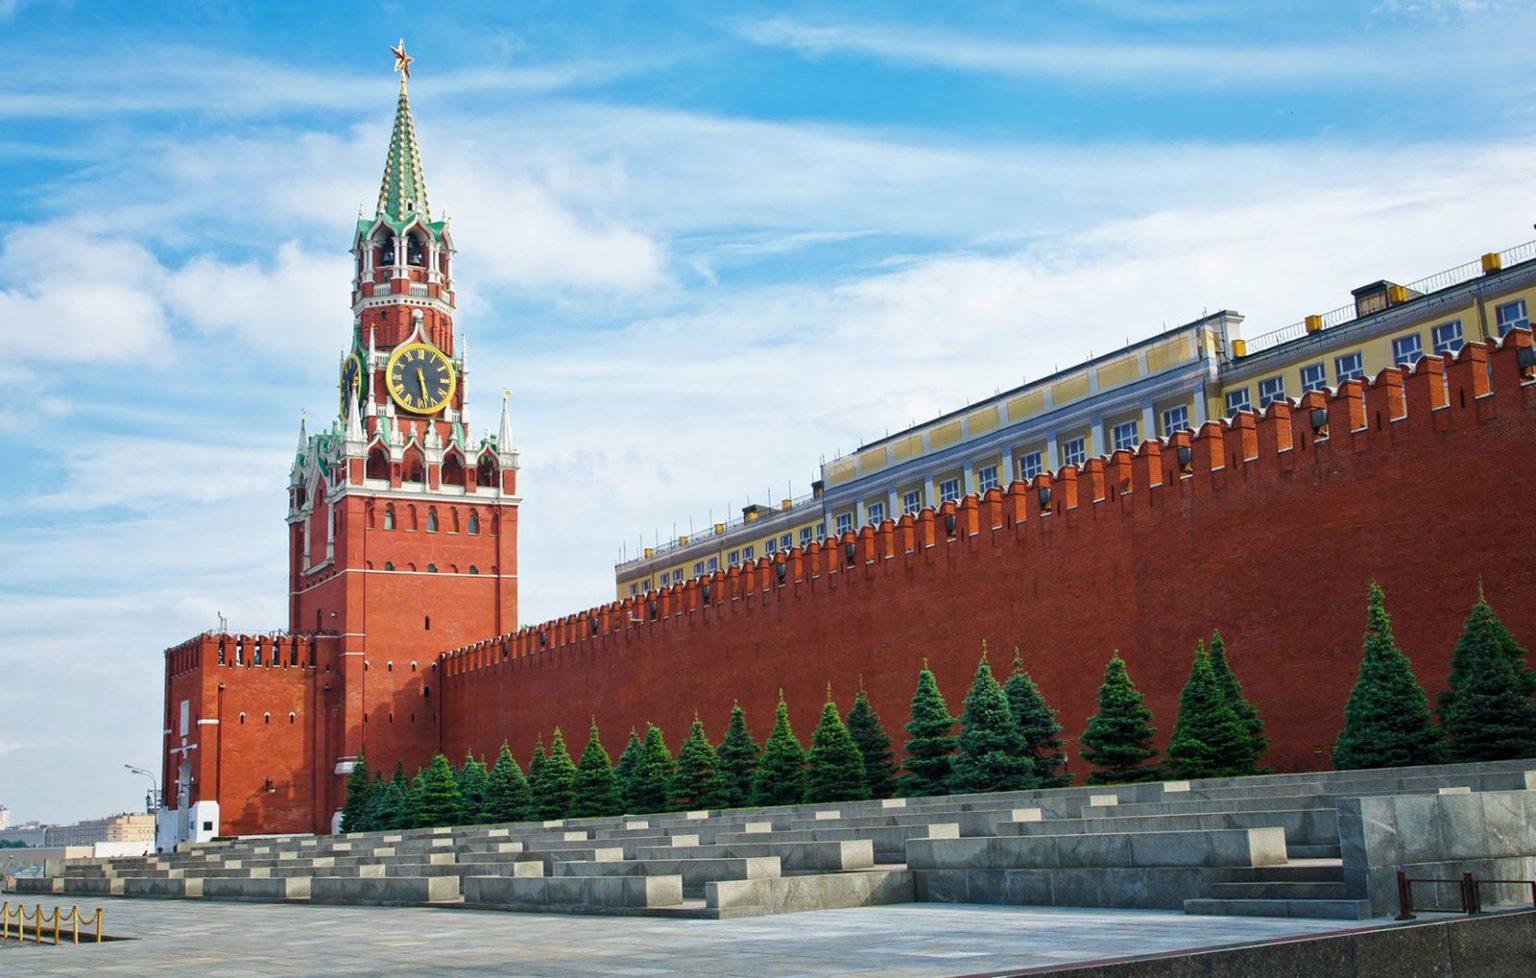 башни на красной площади в москве